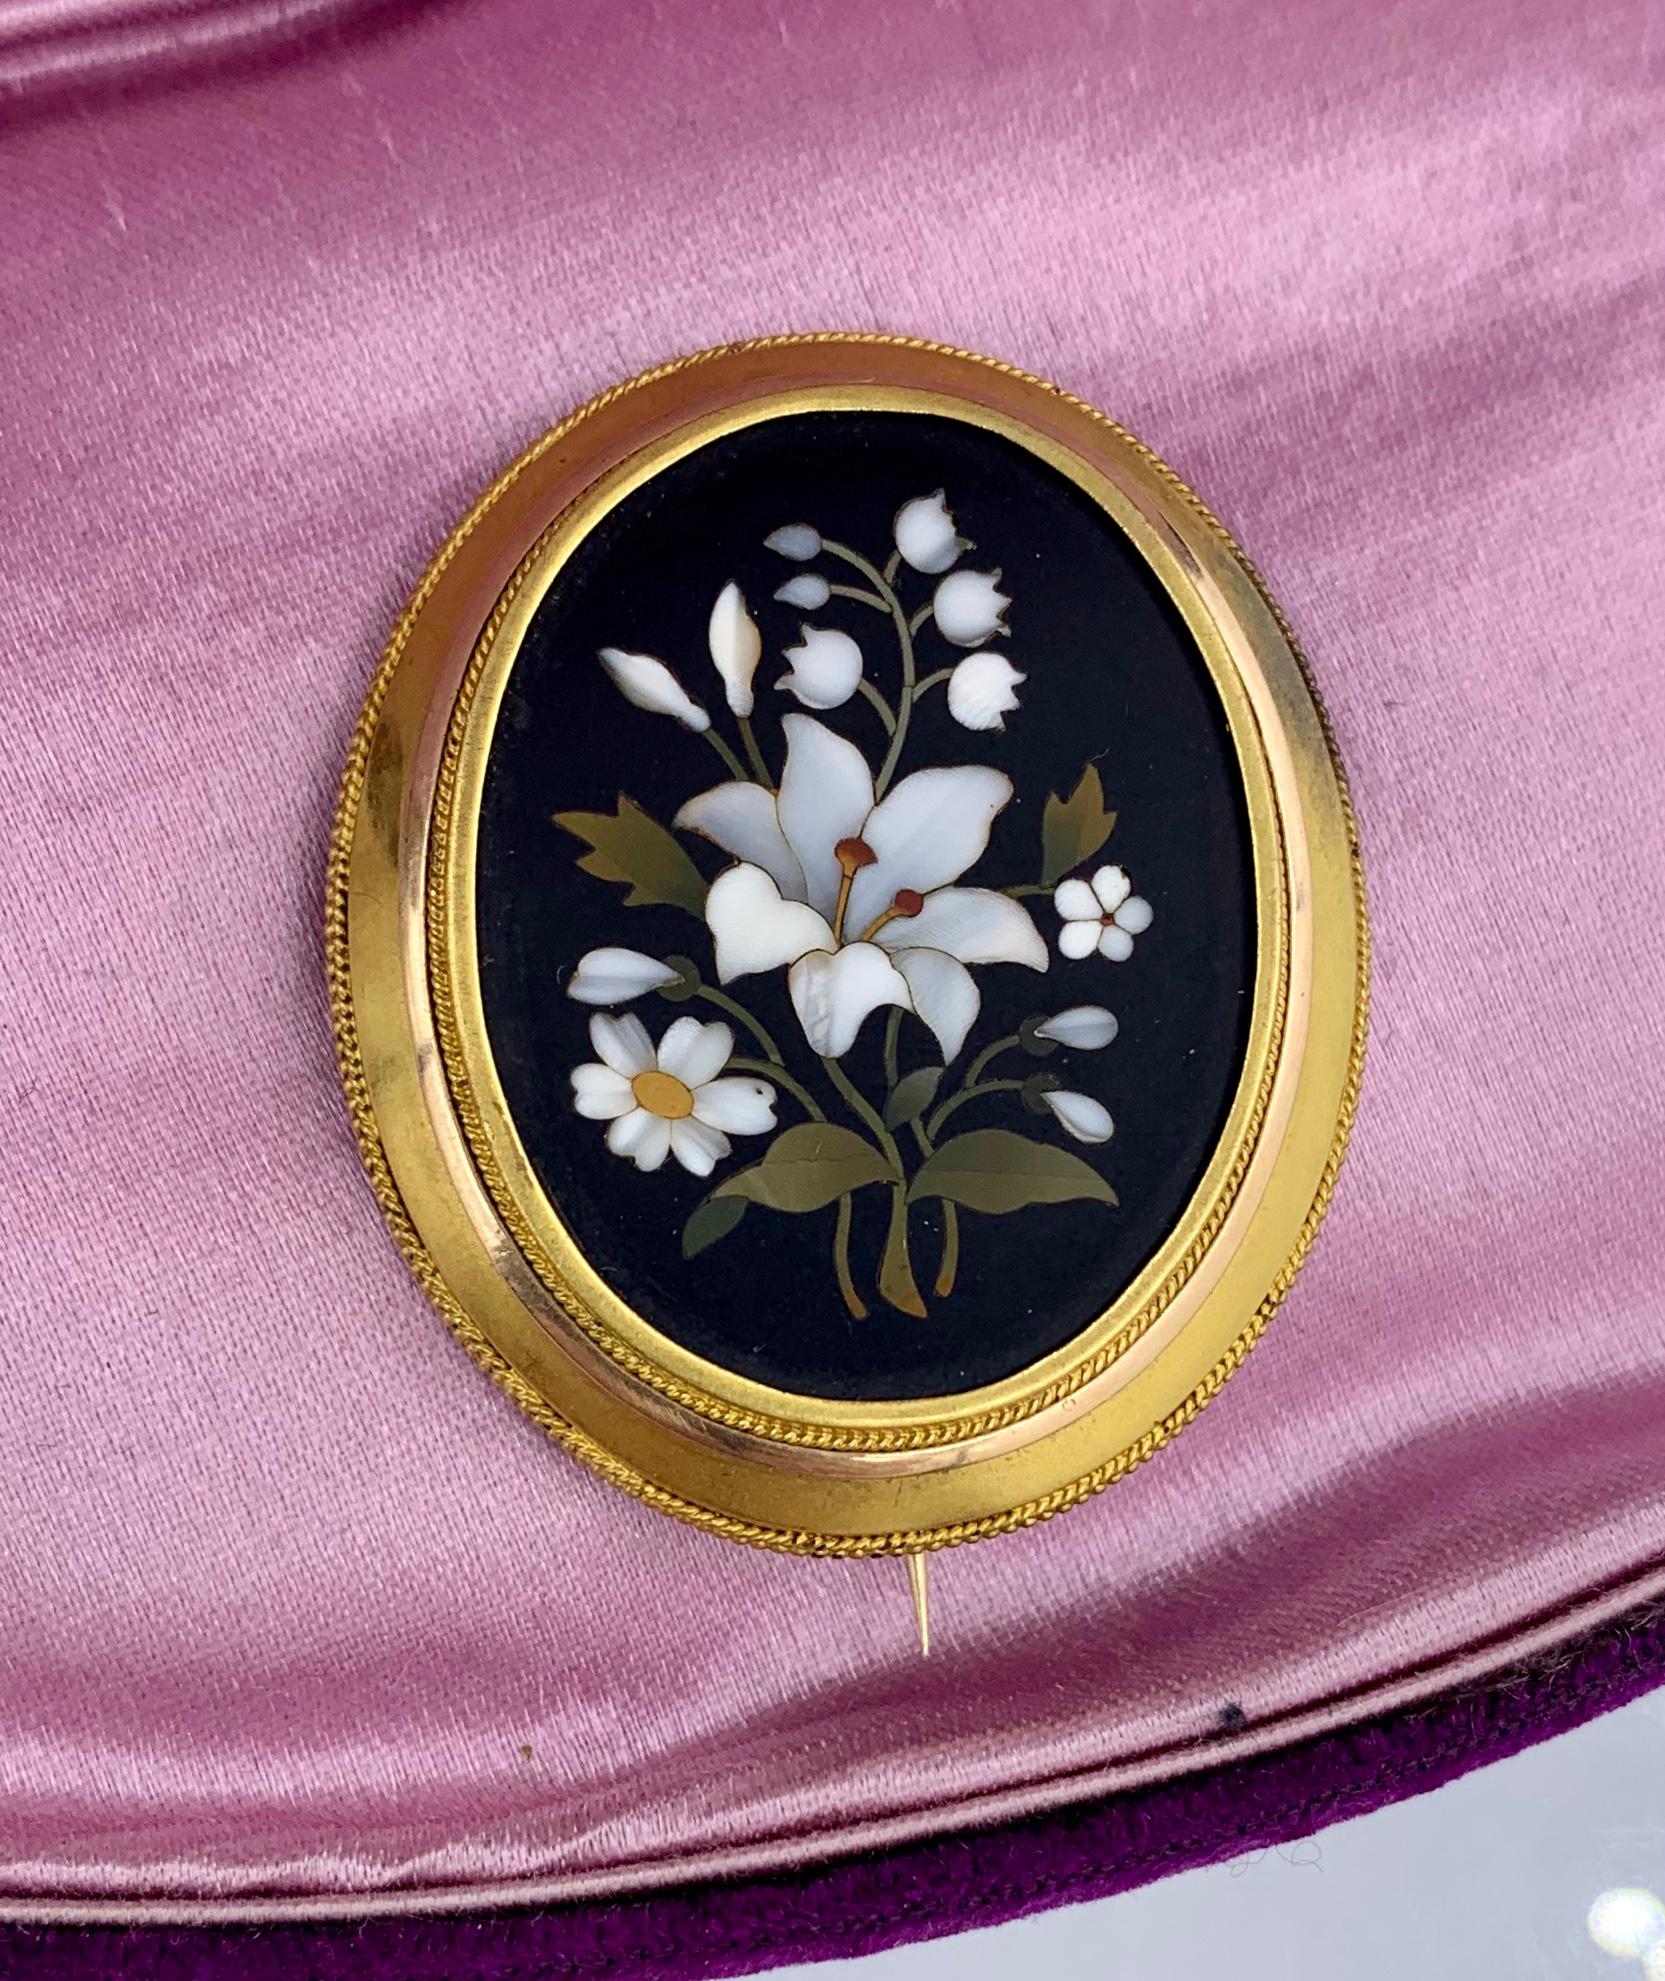 Eine atemberaubende Pietra Dura Brosche aus 14 Karat Gold mit eingelegten Halbedelsteinen, die ein Mosaikbild aus Blumen bilden, darunter eine wunderschöne weiße Lilie in der Mitte, Maiglöckchen, Gänseblümchen und Vergissmeinnicht.  Die Brosche ist